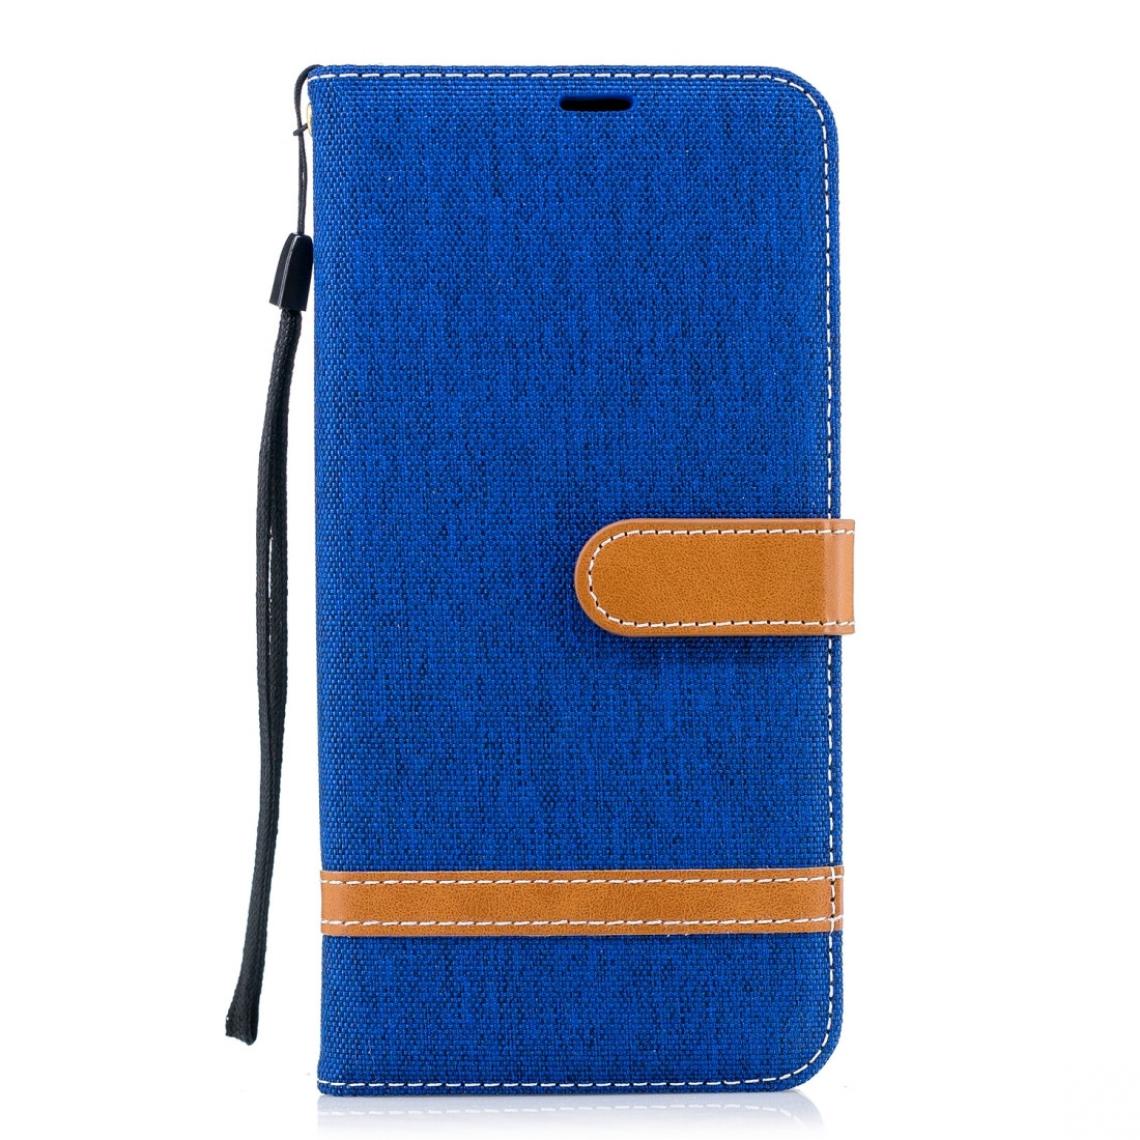 Wewoo - Housse Coque Étui en cuir de couleur assortie à la texture de denim pour Galaxy A8 +avec support et logements cartesainsi que porte-monnaie et lanière bleu royal - Coque, étui smartphone